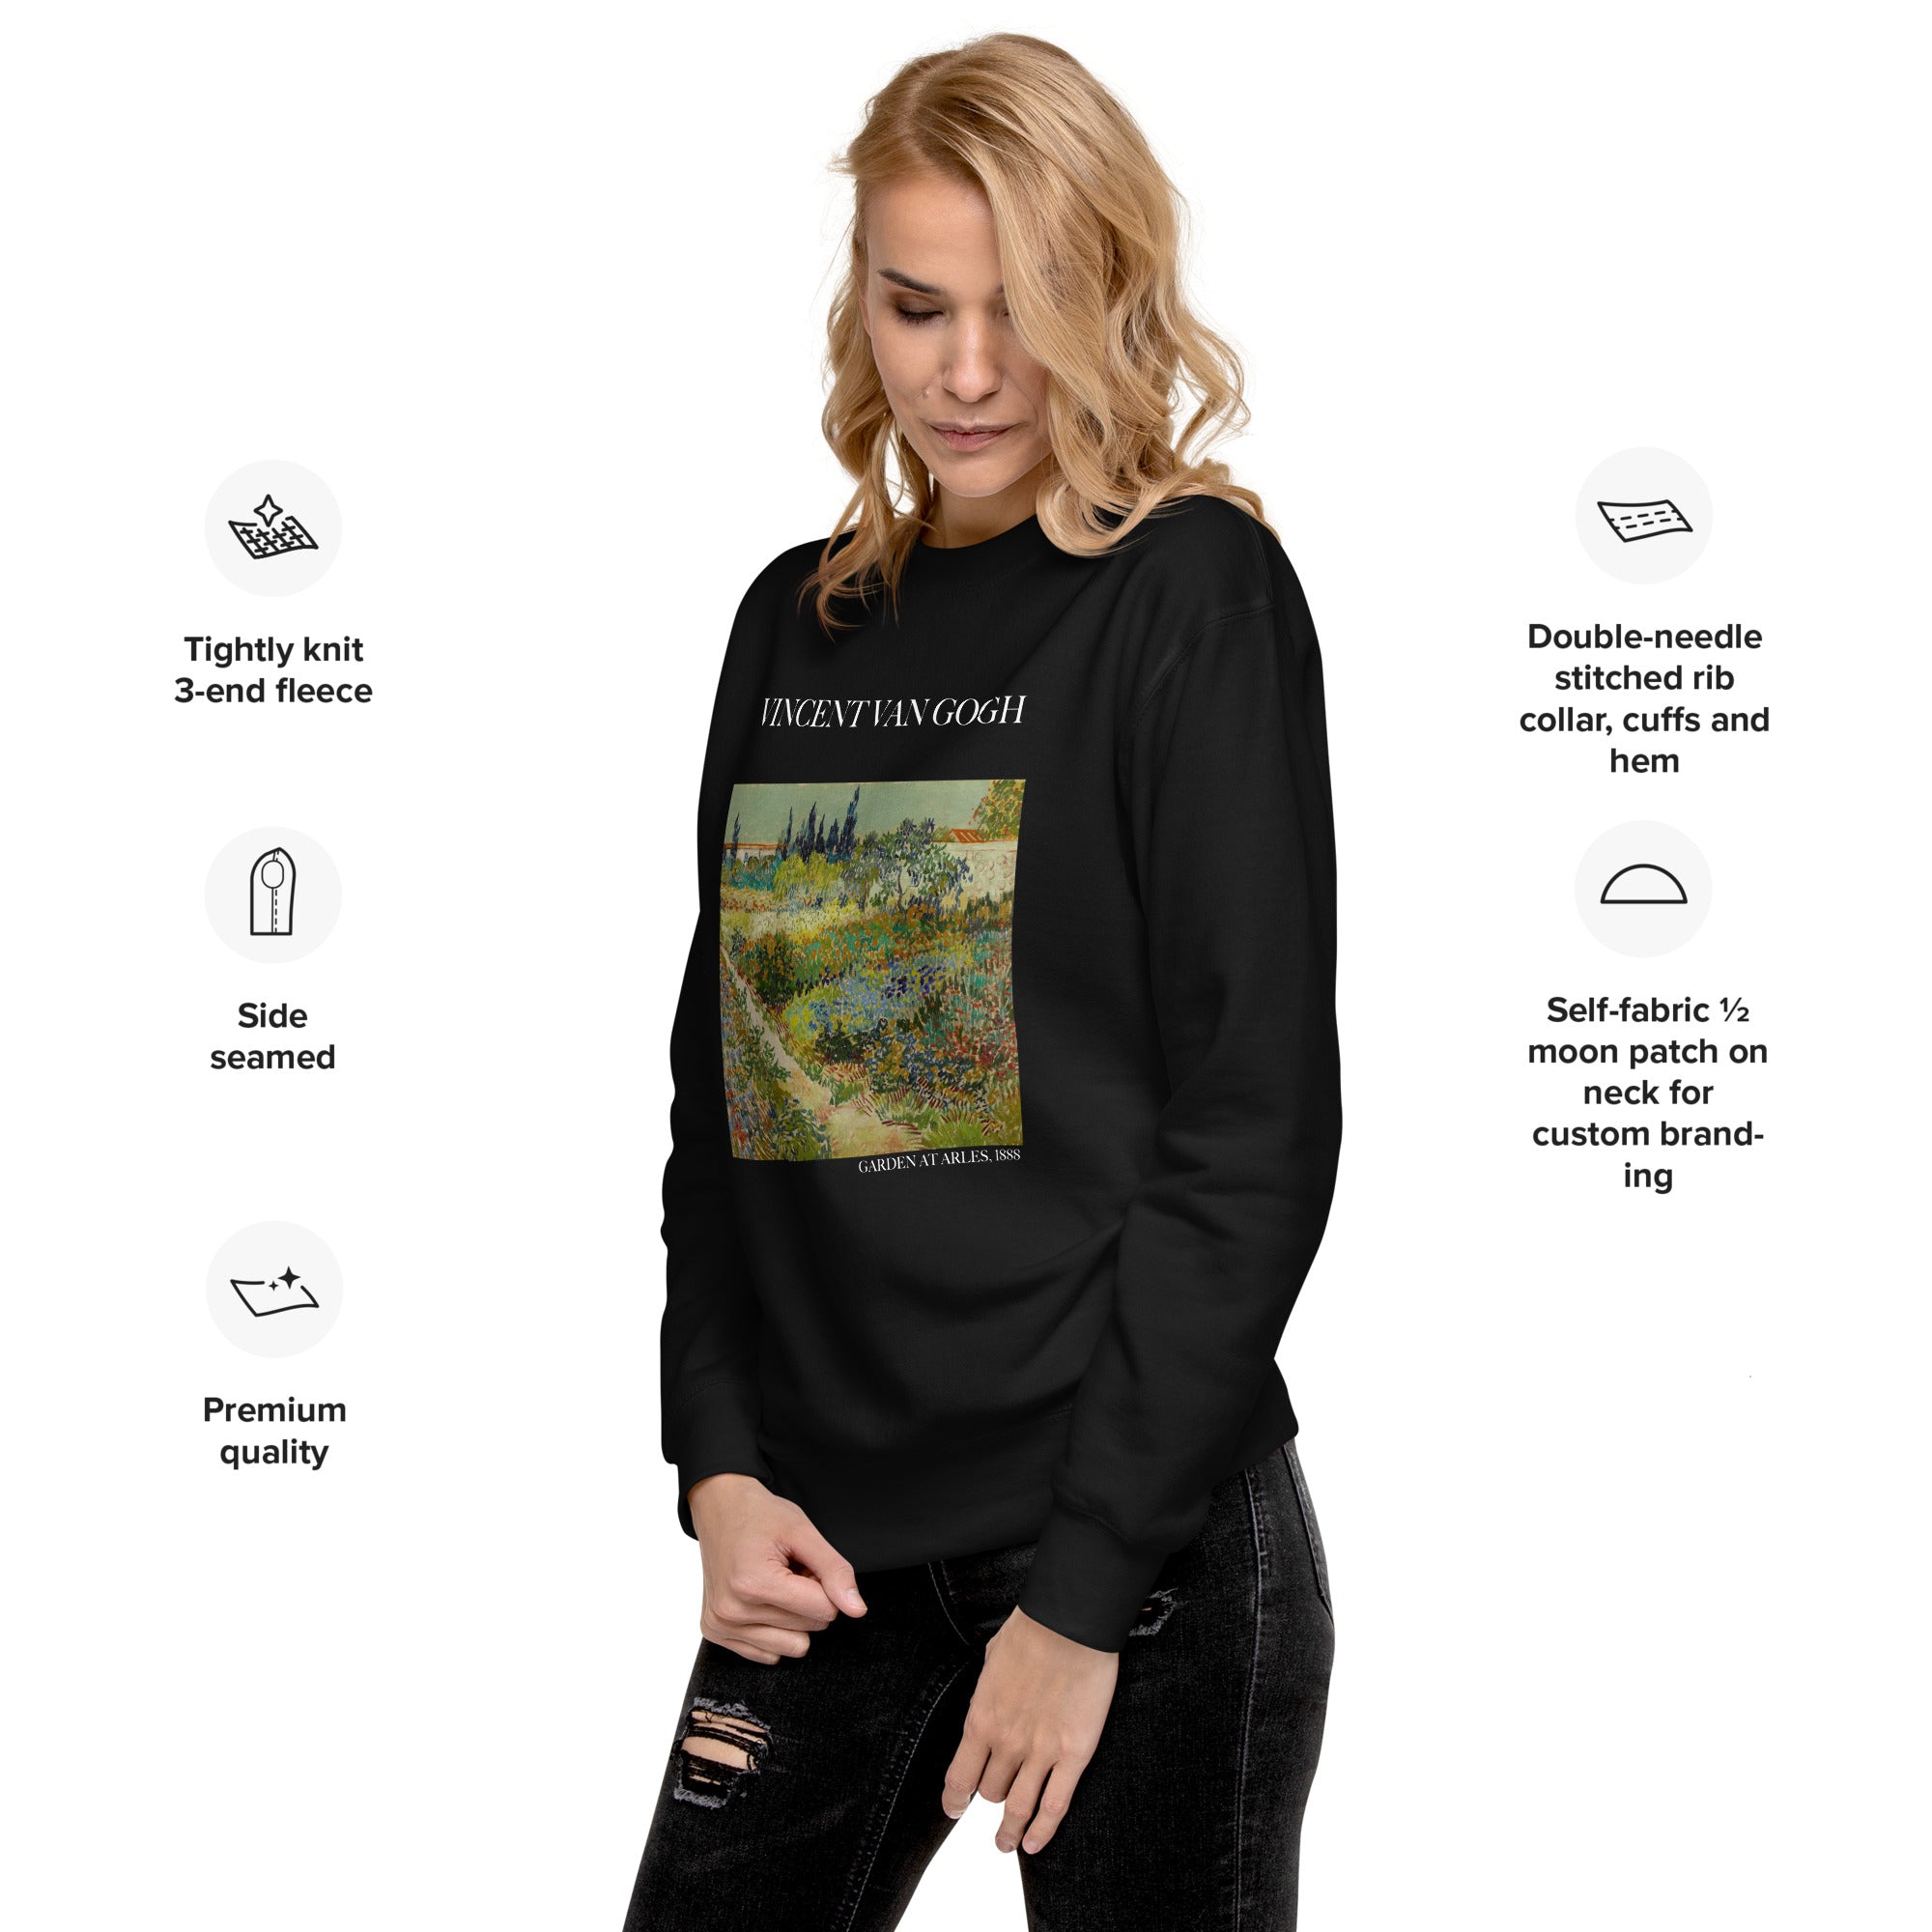 Vincent van Gogh 'Garden at Arles' Famous Painting Sweatshirt | Unisex Premium Sweatshirt